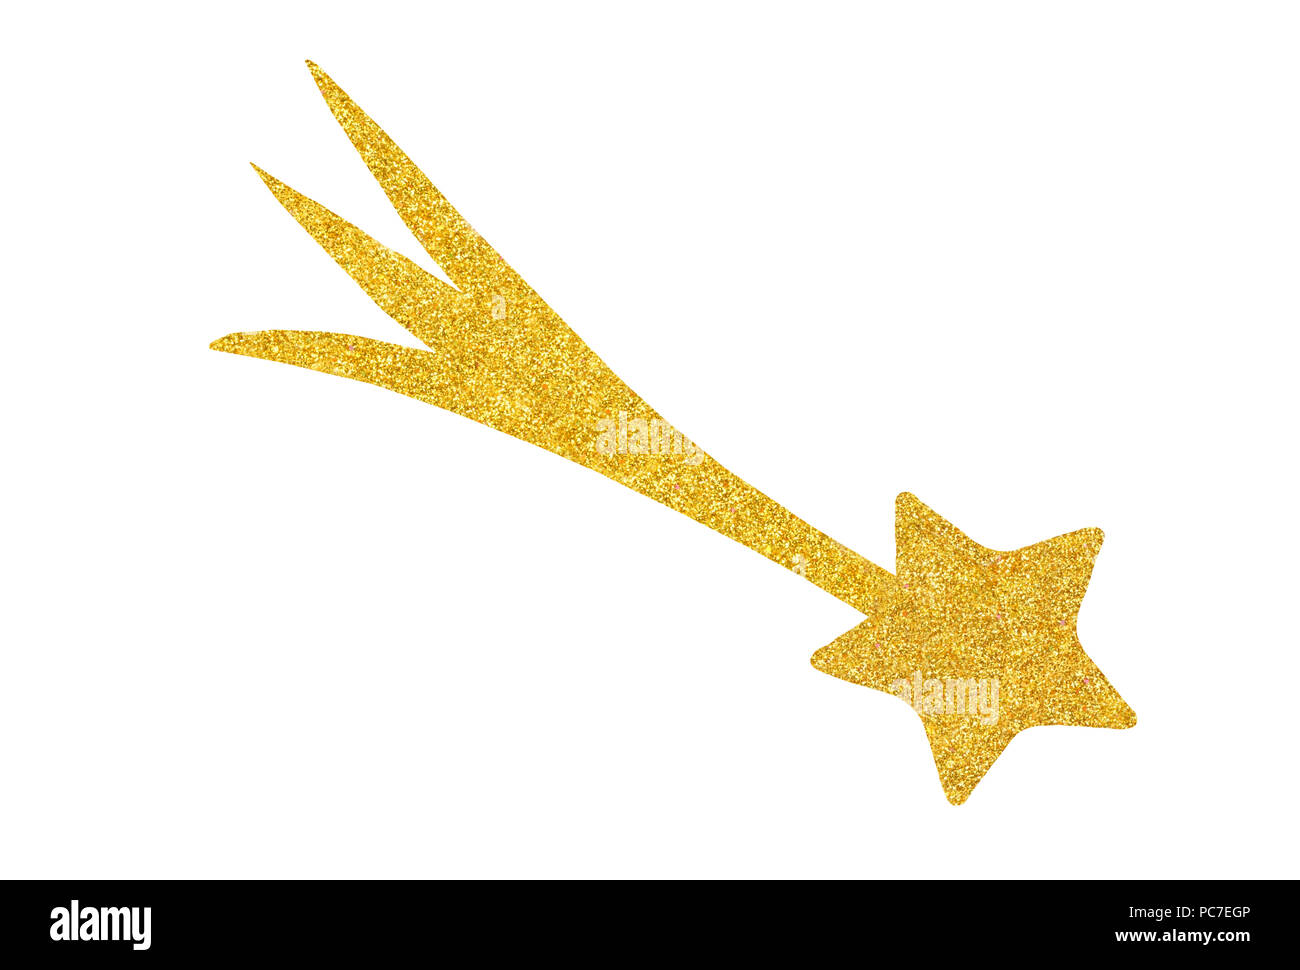 Goldenen Stern Auf Weissem Hintergrund Bereit Fur Ausschneiden Und Einfugen Isoliert Stockfotografie Alamy